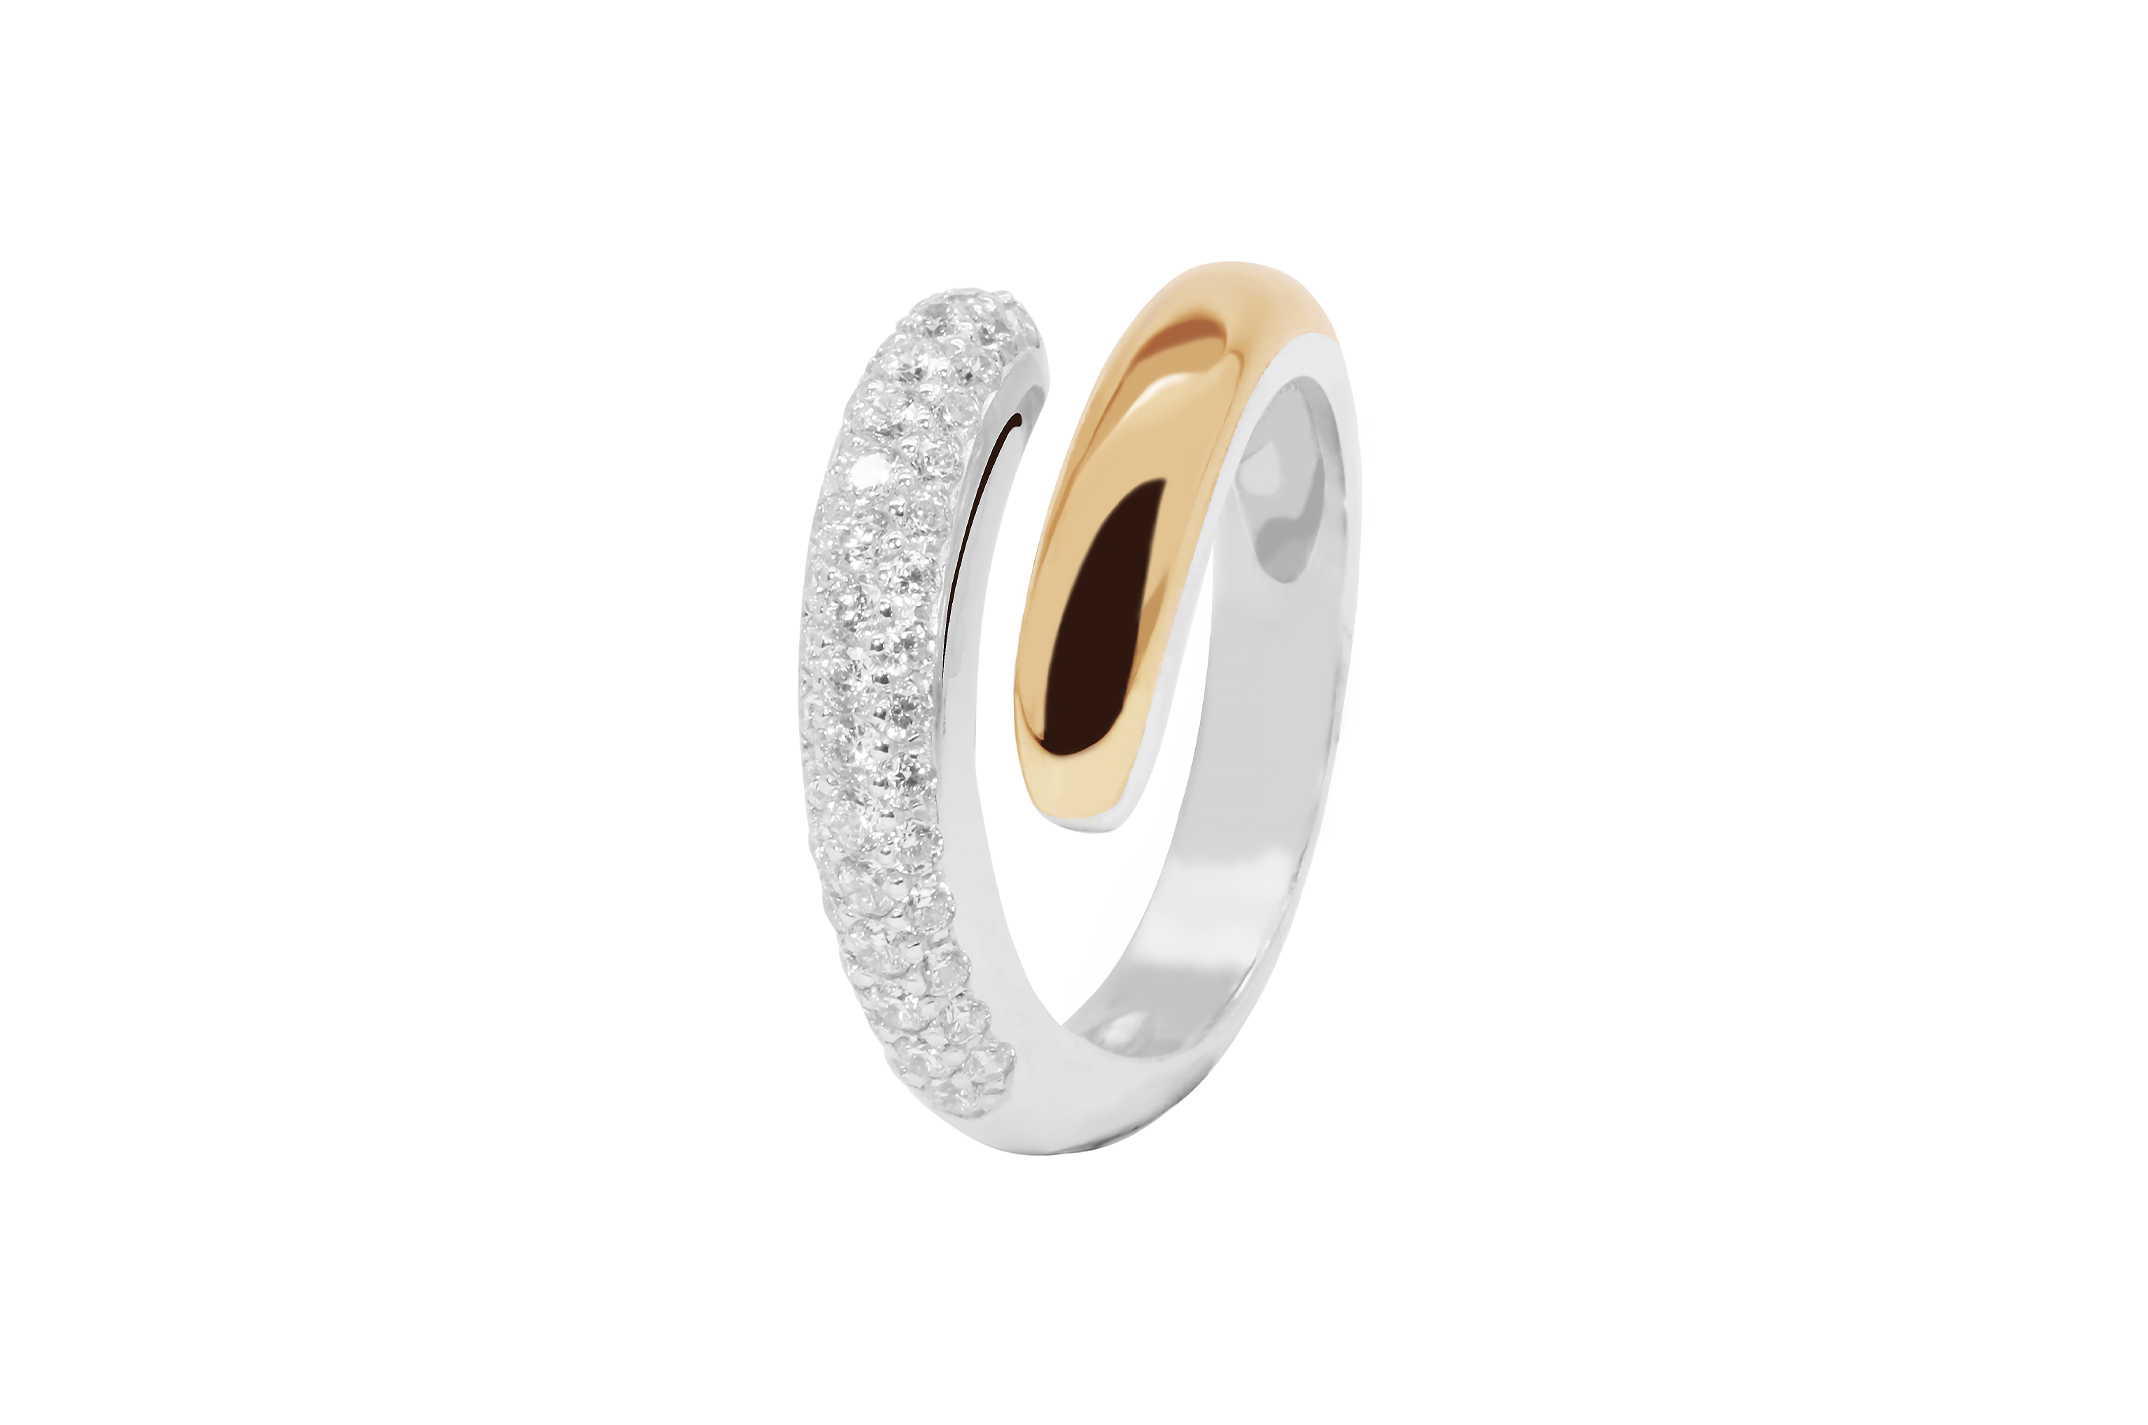 Joia: anel;Material: ouro 9 kt e prata 925;Peso: 1.0 gr (prata) e 0.2 gr (ouro);Pedras: zirconias;Cor: branco;Size: 12;Género: mulher